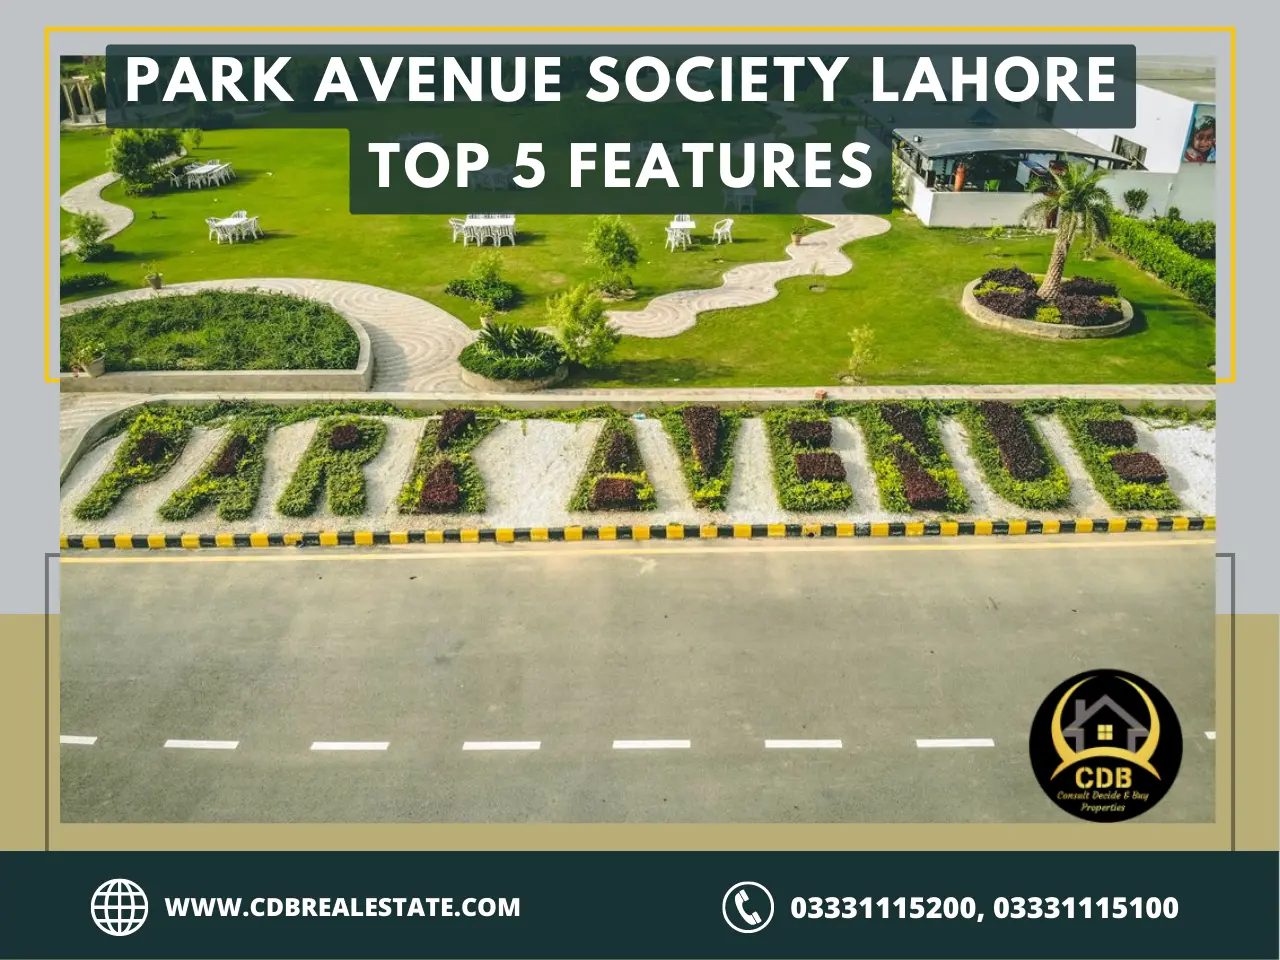 Park Avenue Society Lahore